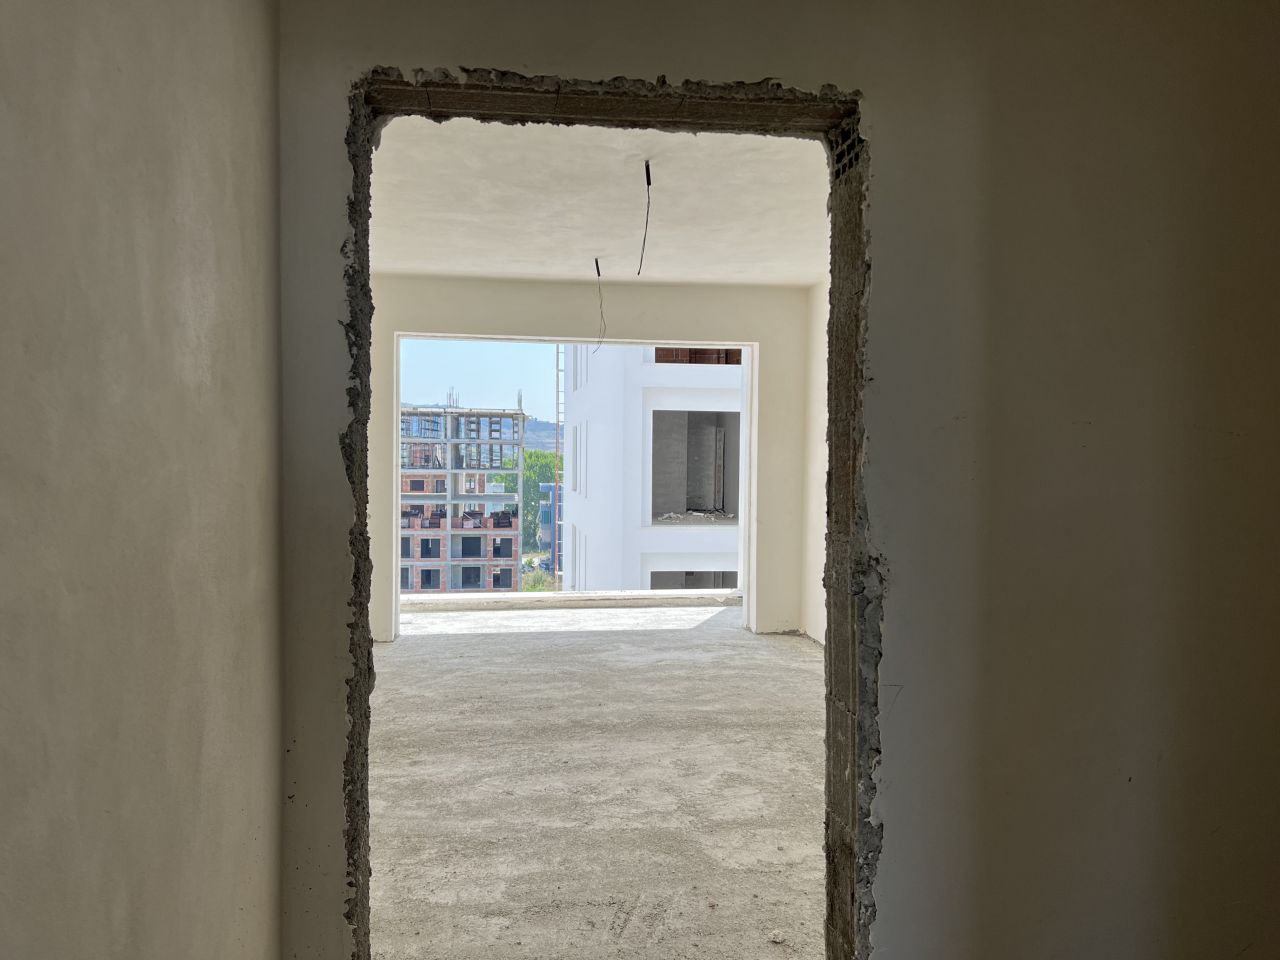 Leilighet Til Salgs I Golem Durres Albania, I En Ny Bygning Under Bygging, Nær Stranden